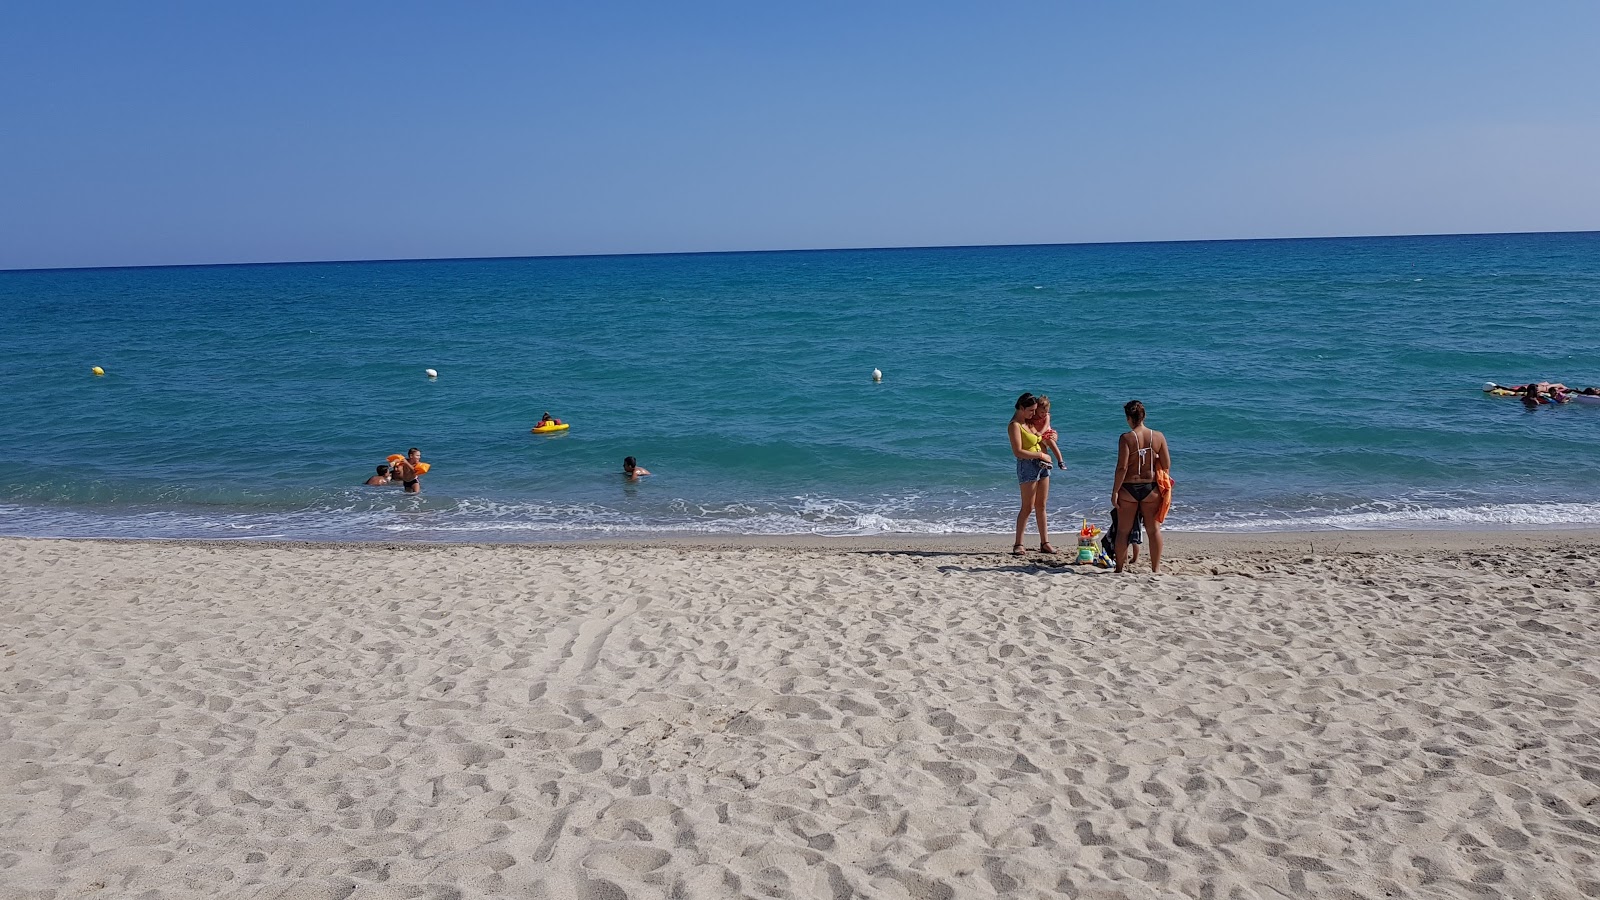 Photo of Villaggio Carrao beach located in natural area